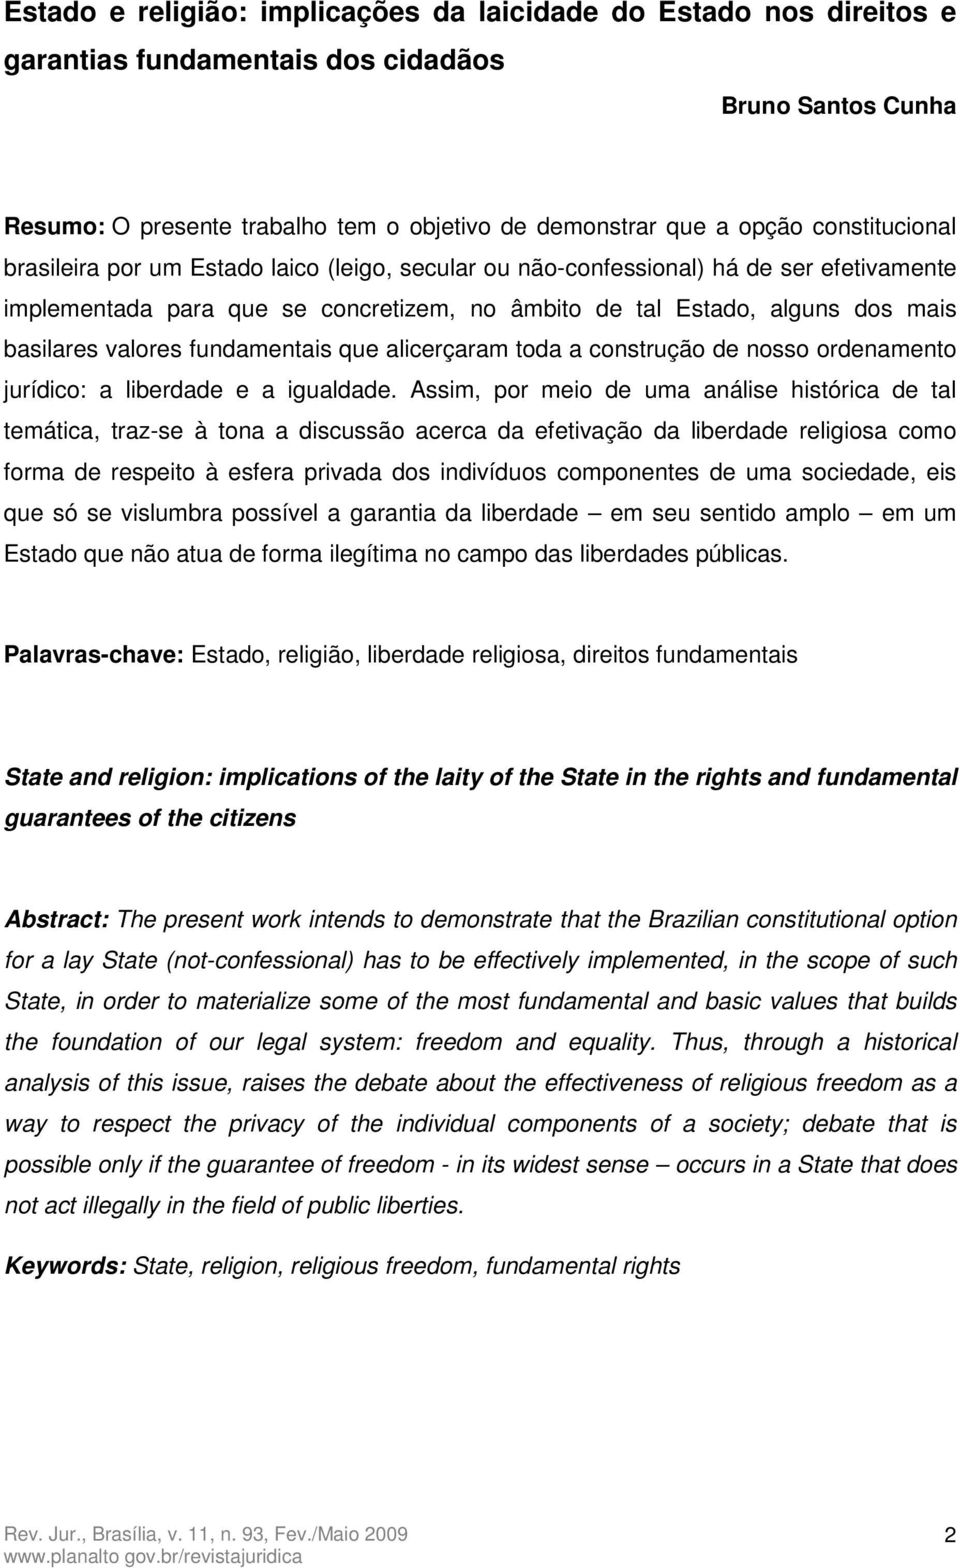 valores fundamentais que alicerçaram toda a construção de nosso ordenamento jurídico: a liberdade e a igualdade.